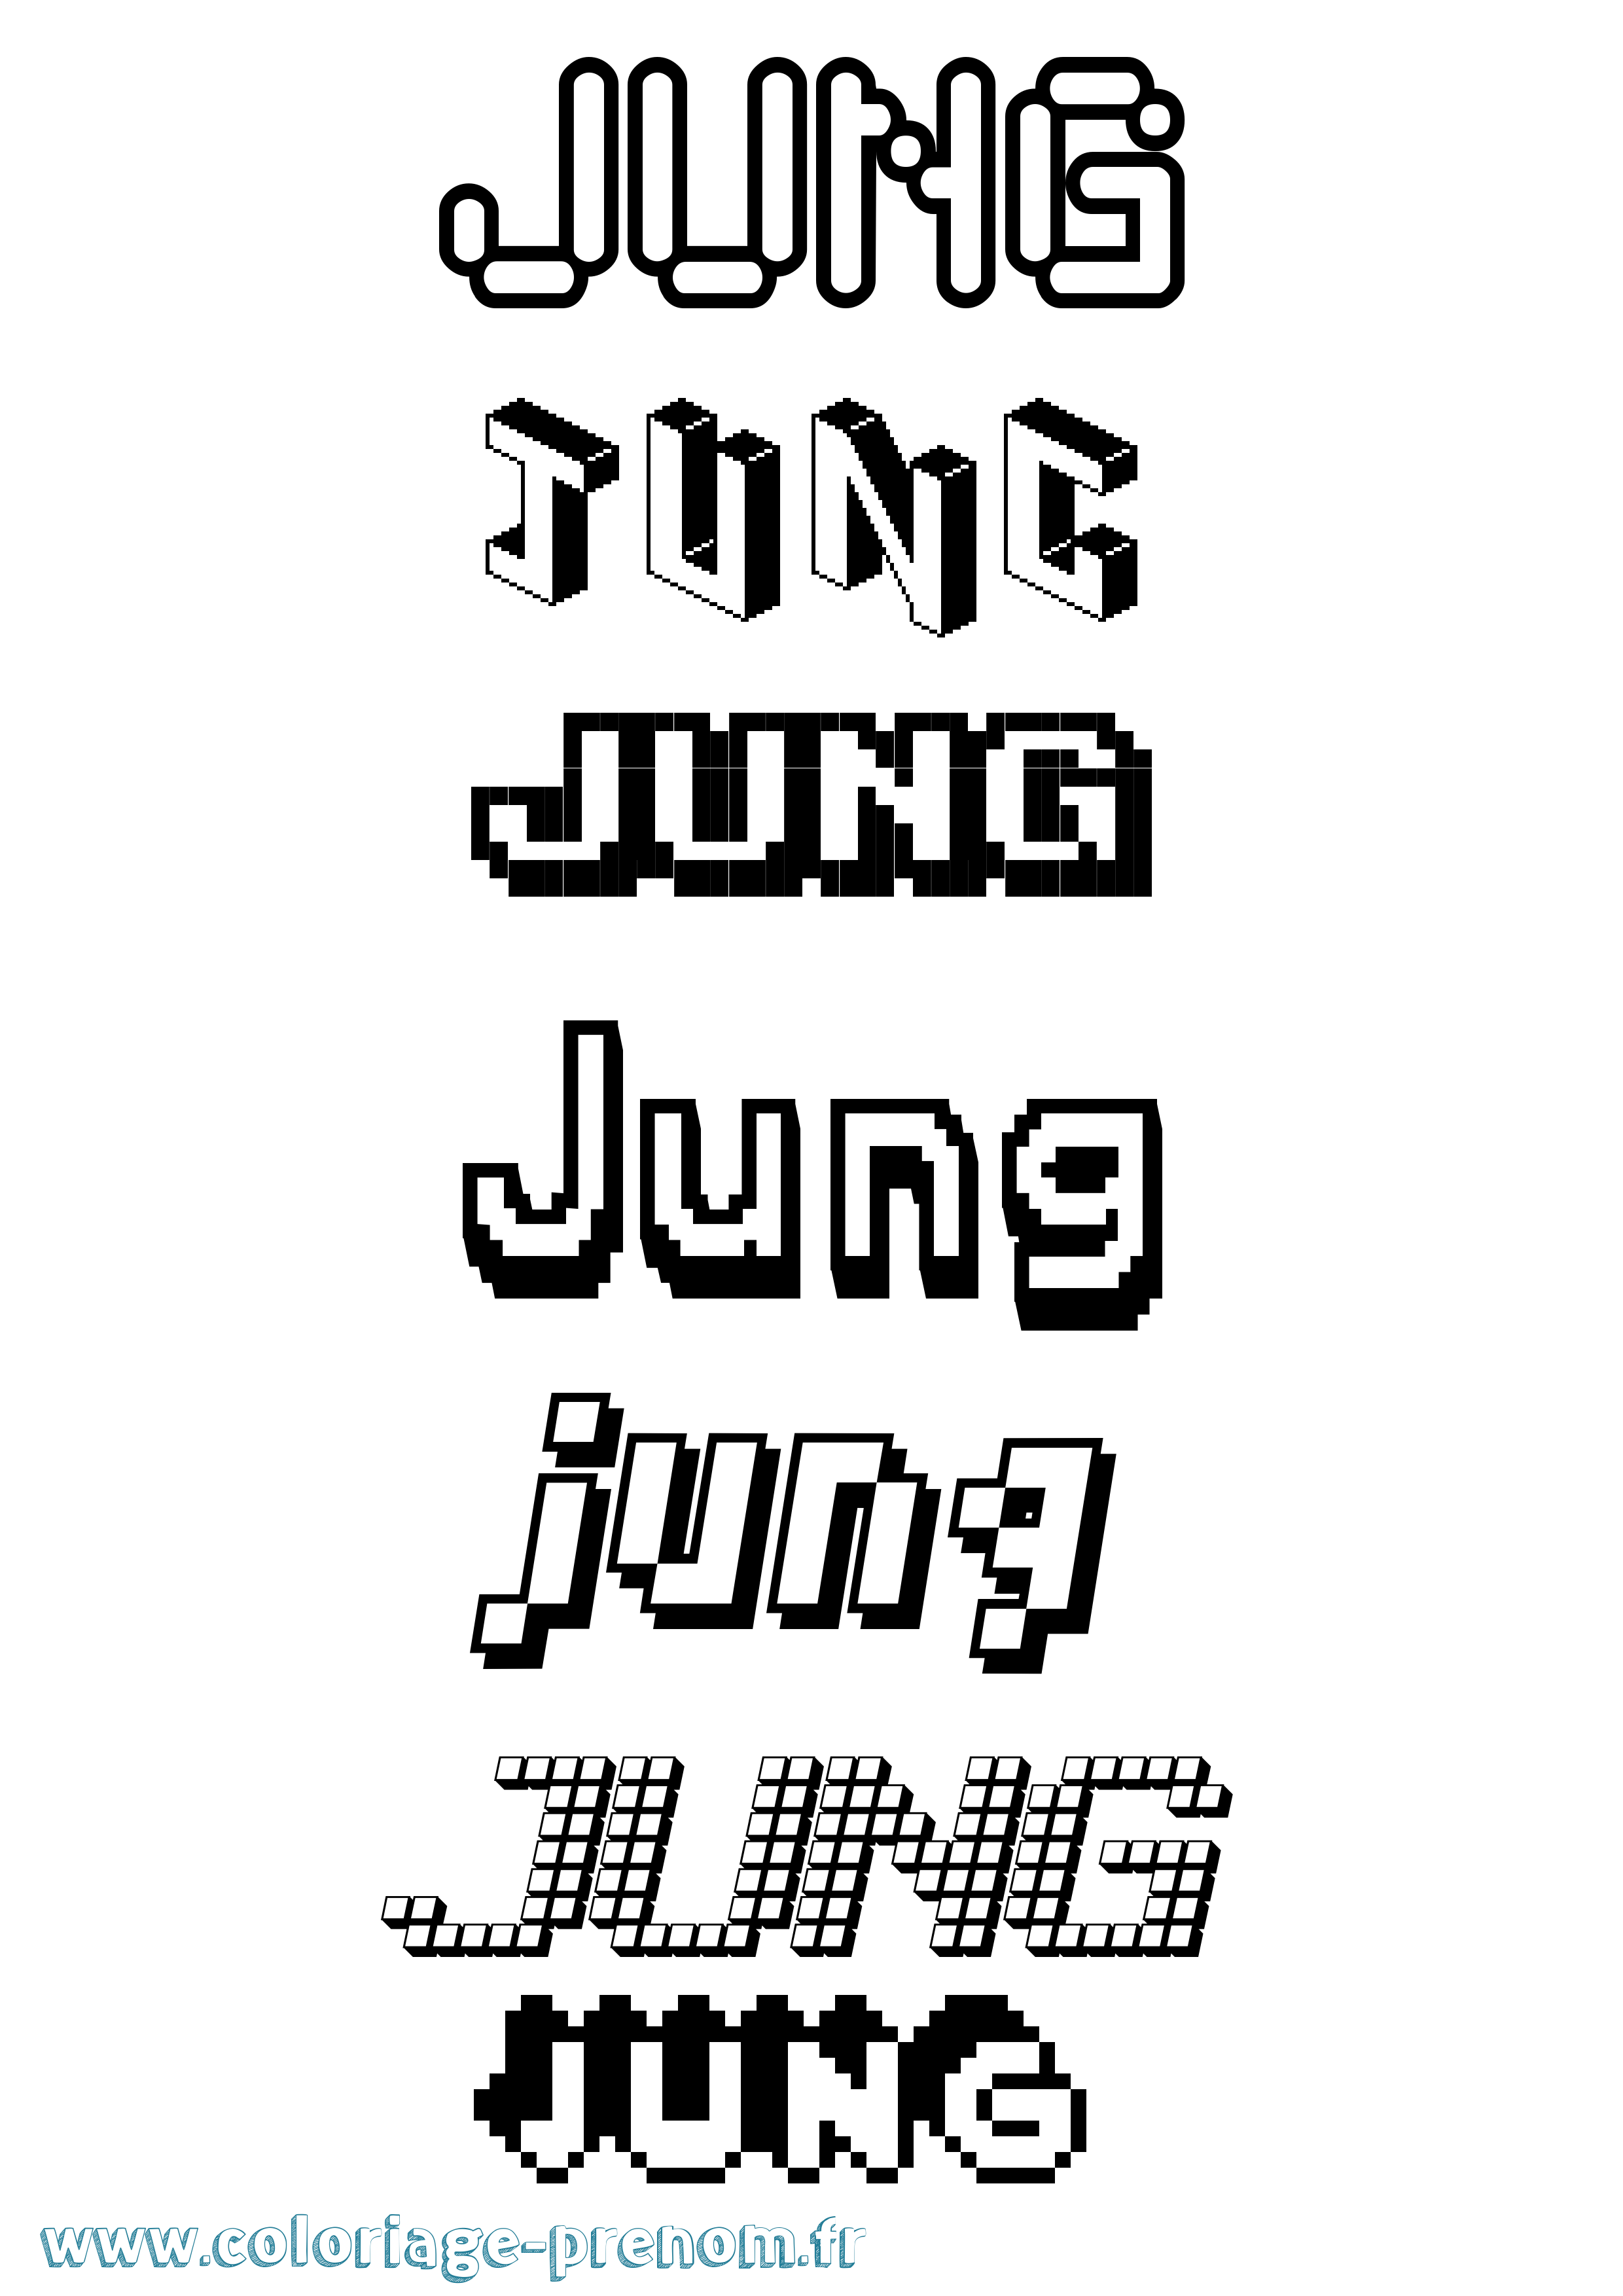 Coloriage prénom Jung Pixel